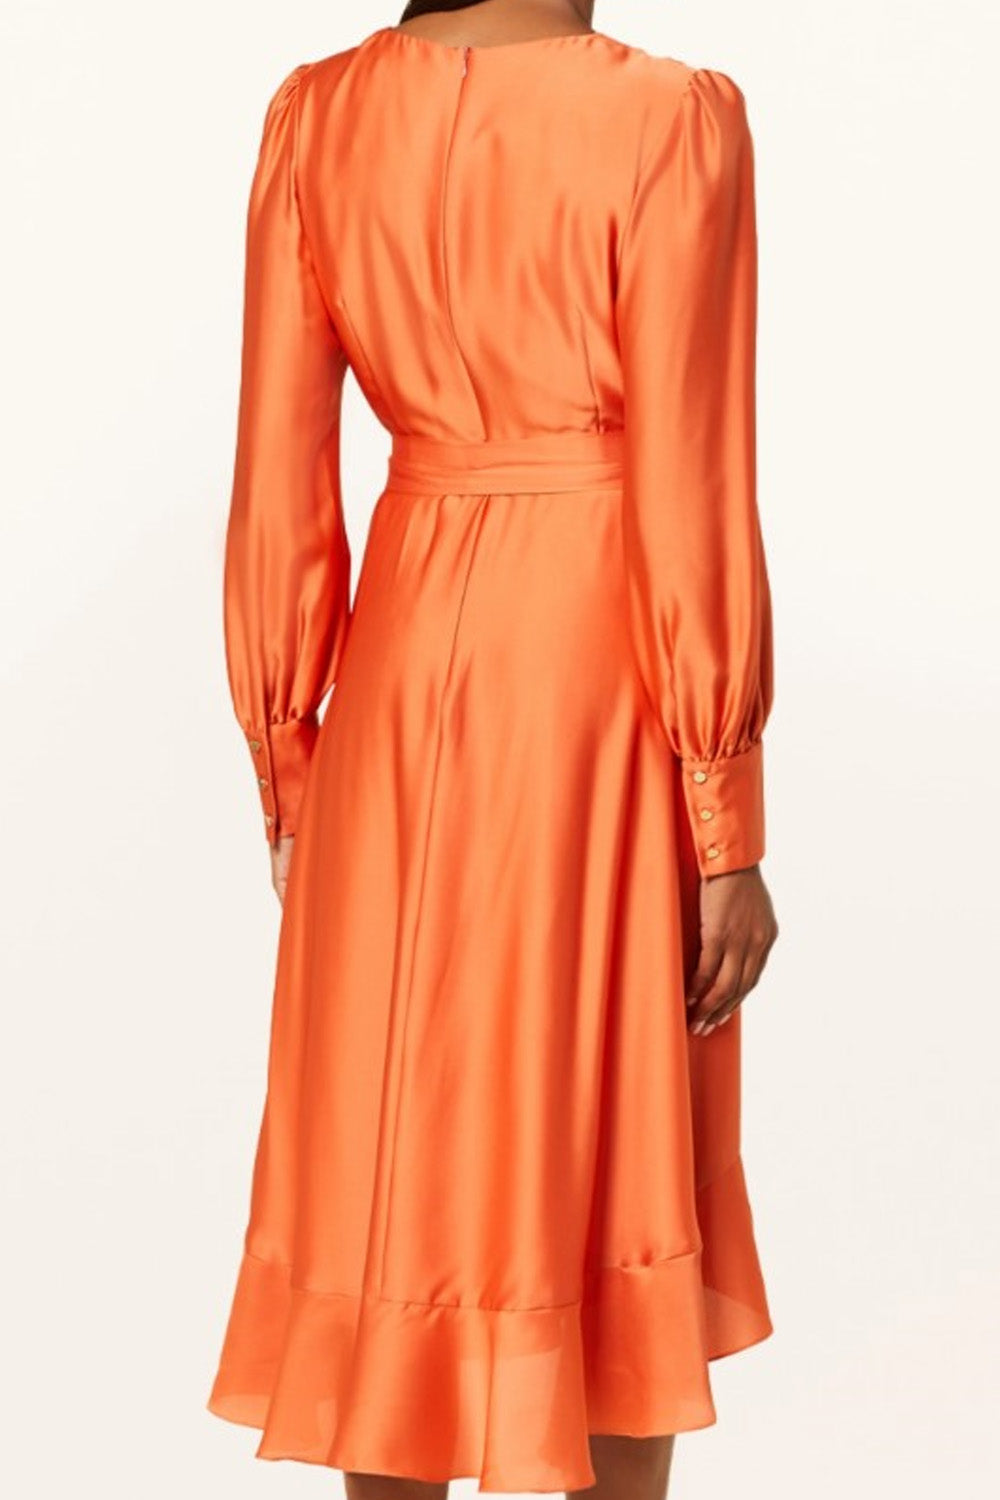 Eco Orange Dress